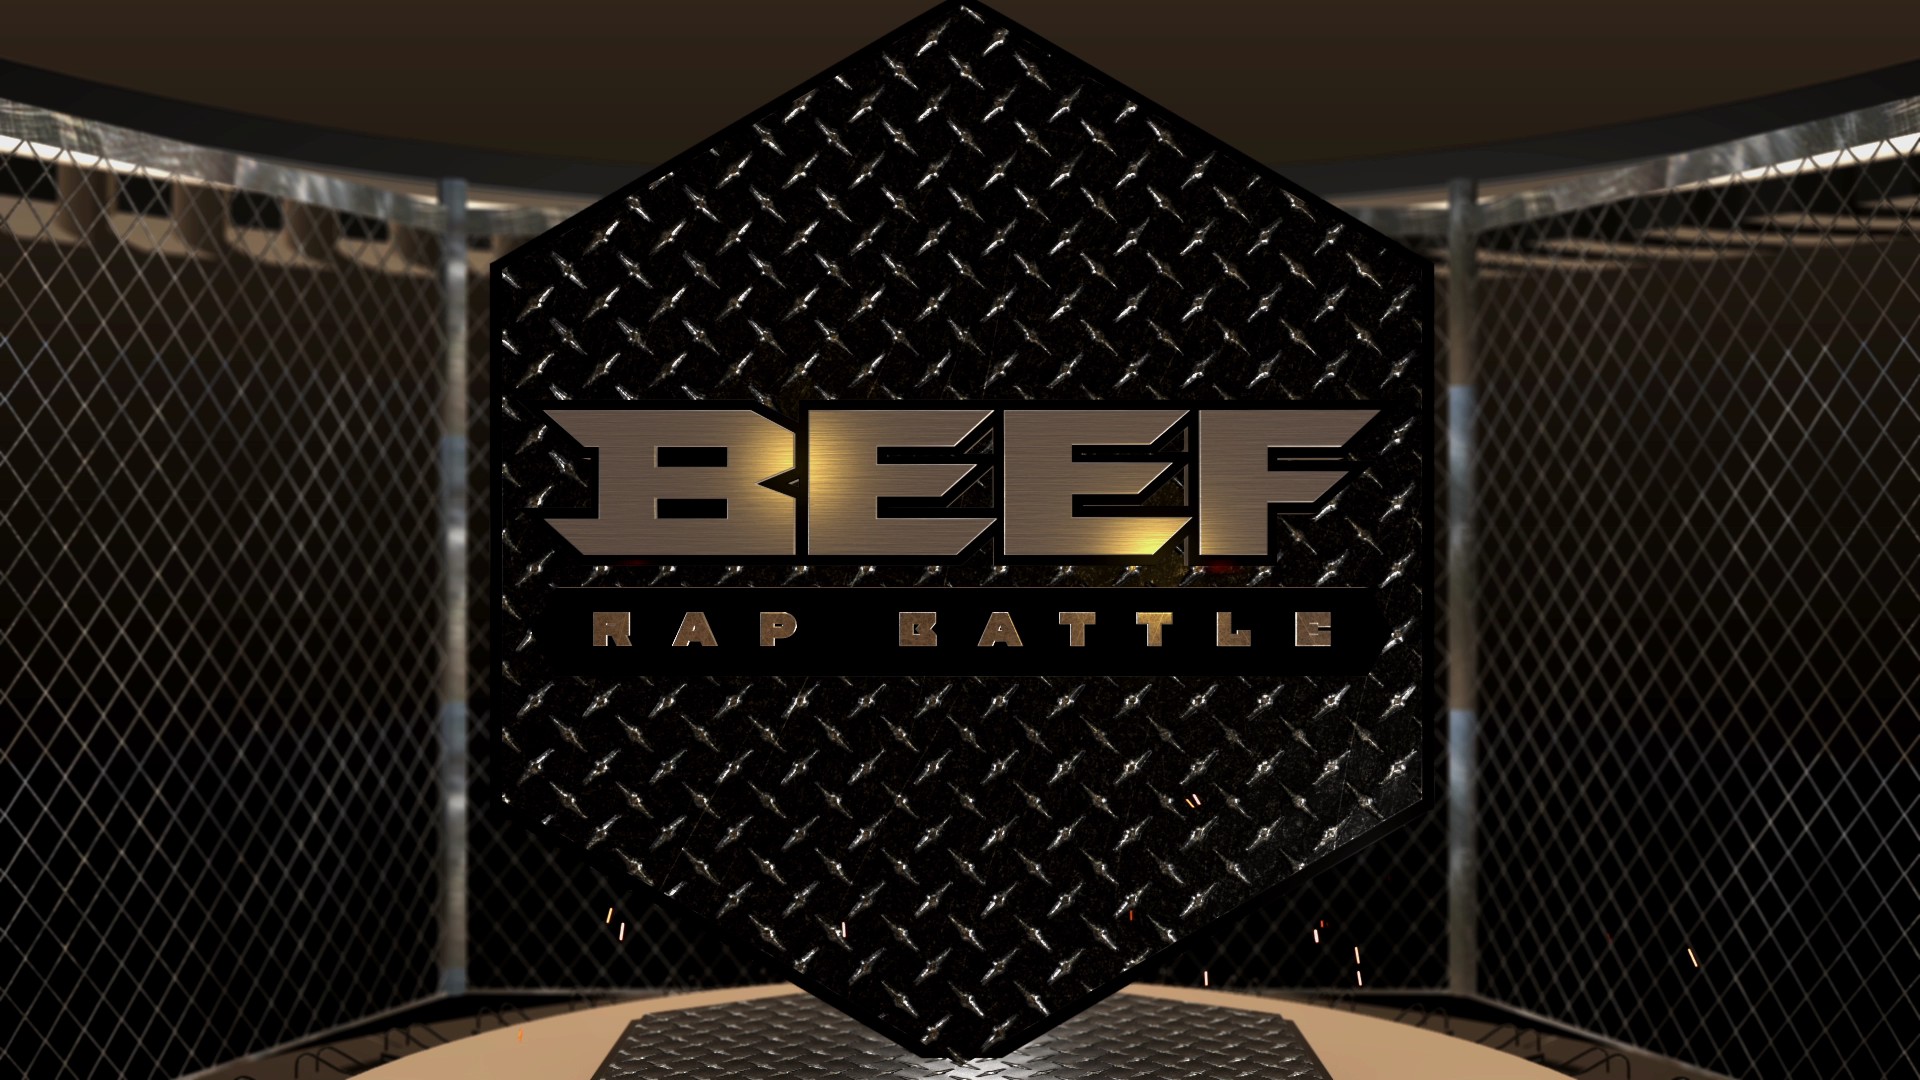 beef rap battle bumper